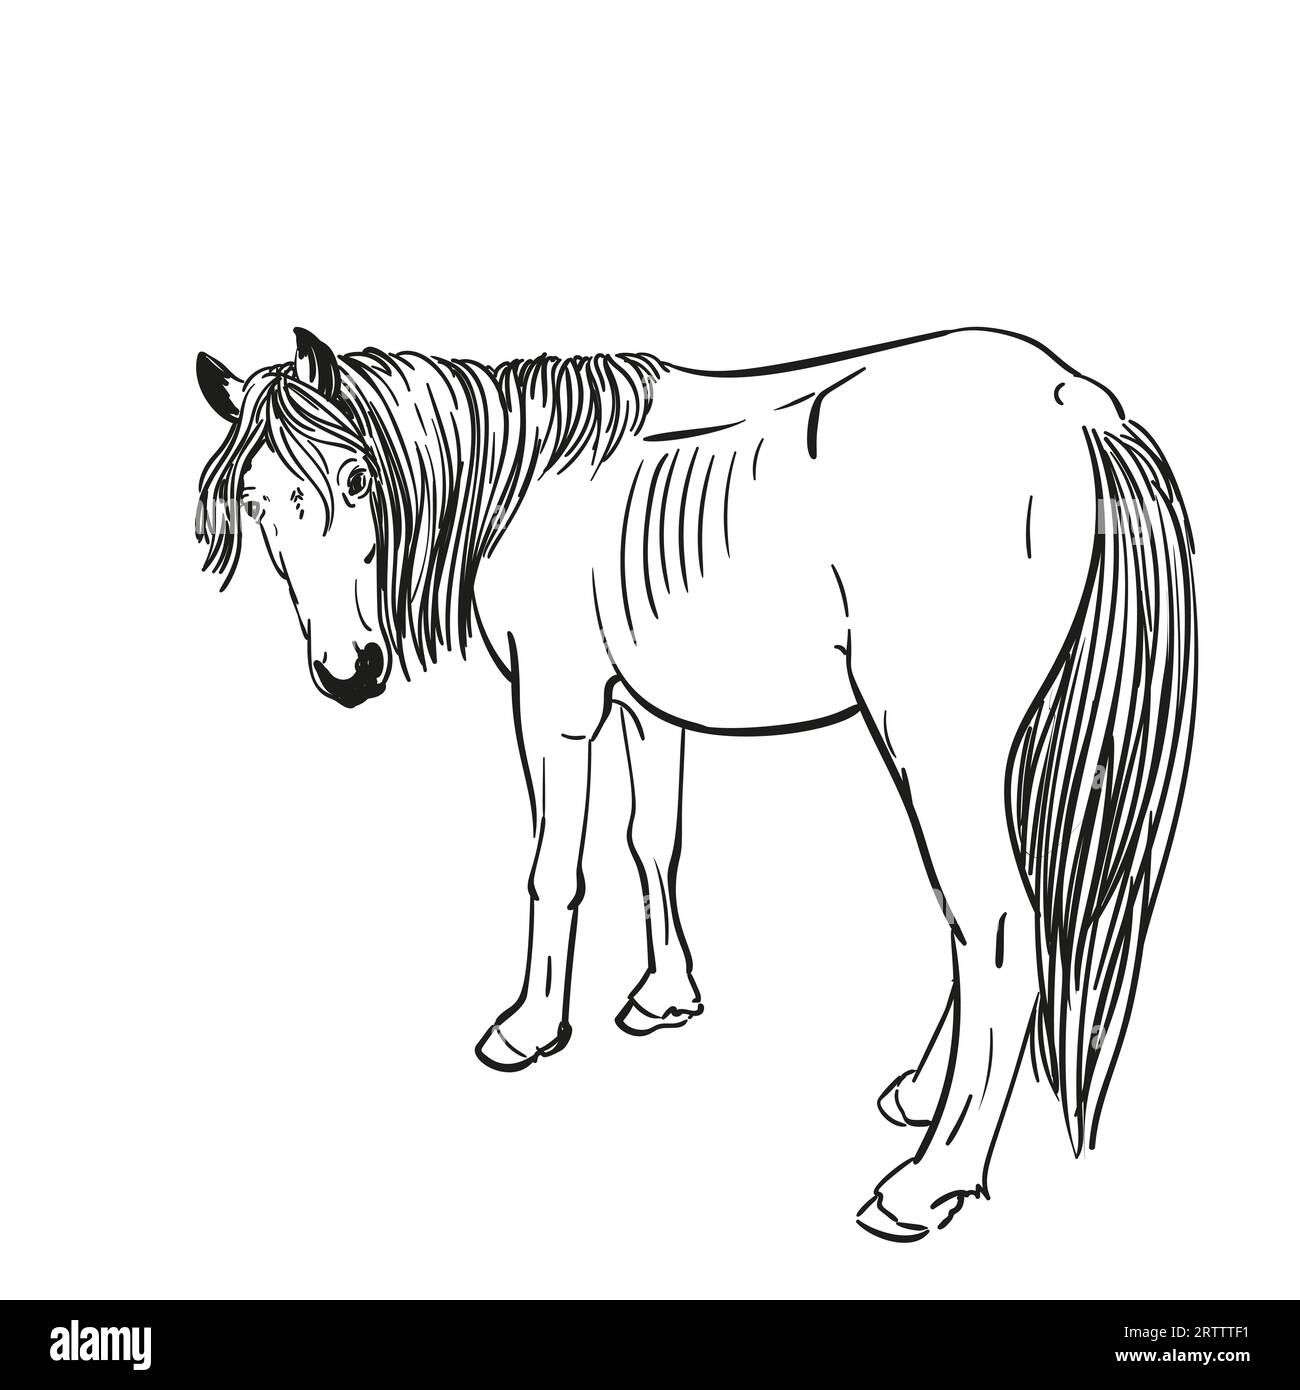 Croquis de cheval affamé avec des côtes saillantes tourné sa tête pour regarder en arrière, portrait en longueur isolé illustration dessinée à la main en noir et blanc vecteur Illustration de Vecteur